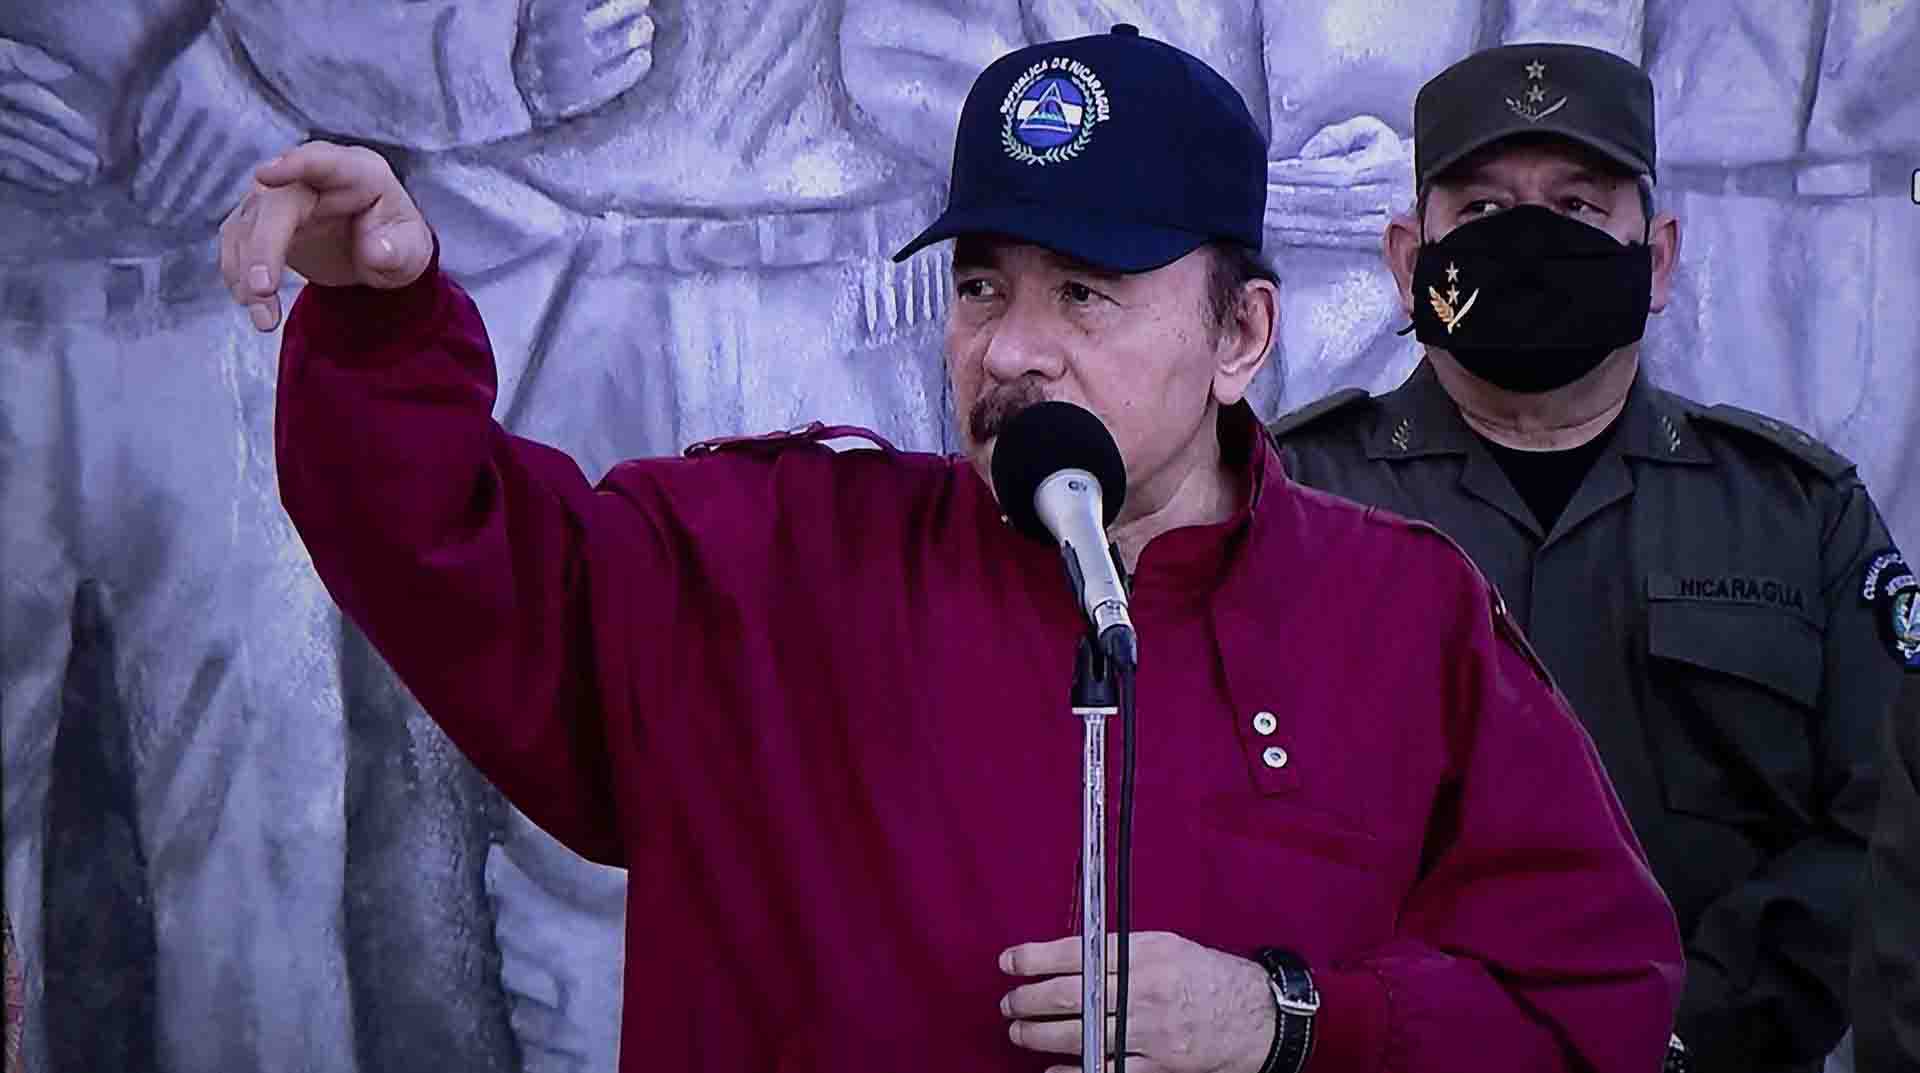 El presidente de Nicaragua Daniel Ortega durante el acto en homenaje al 88 aniversario del tránsito a la inmortalidad del General Augusto C. Sandino, en una fotografía de archivo. EFE